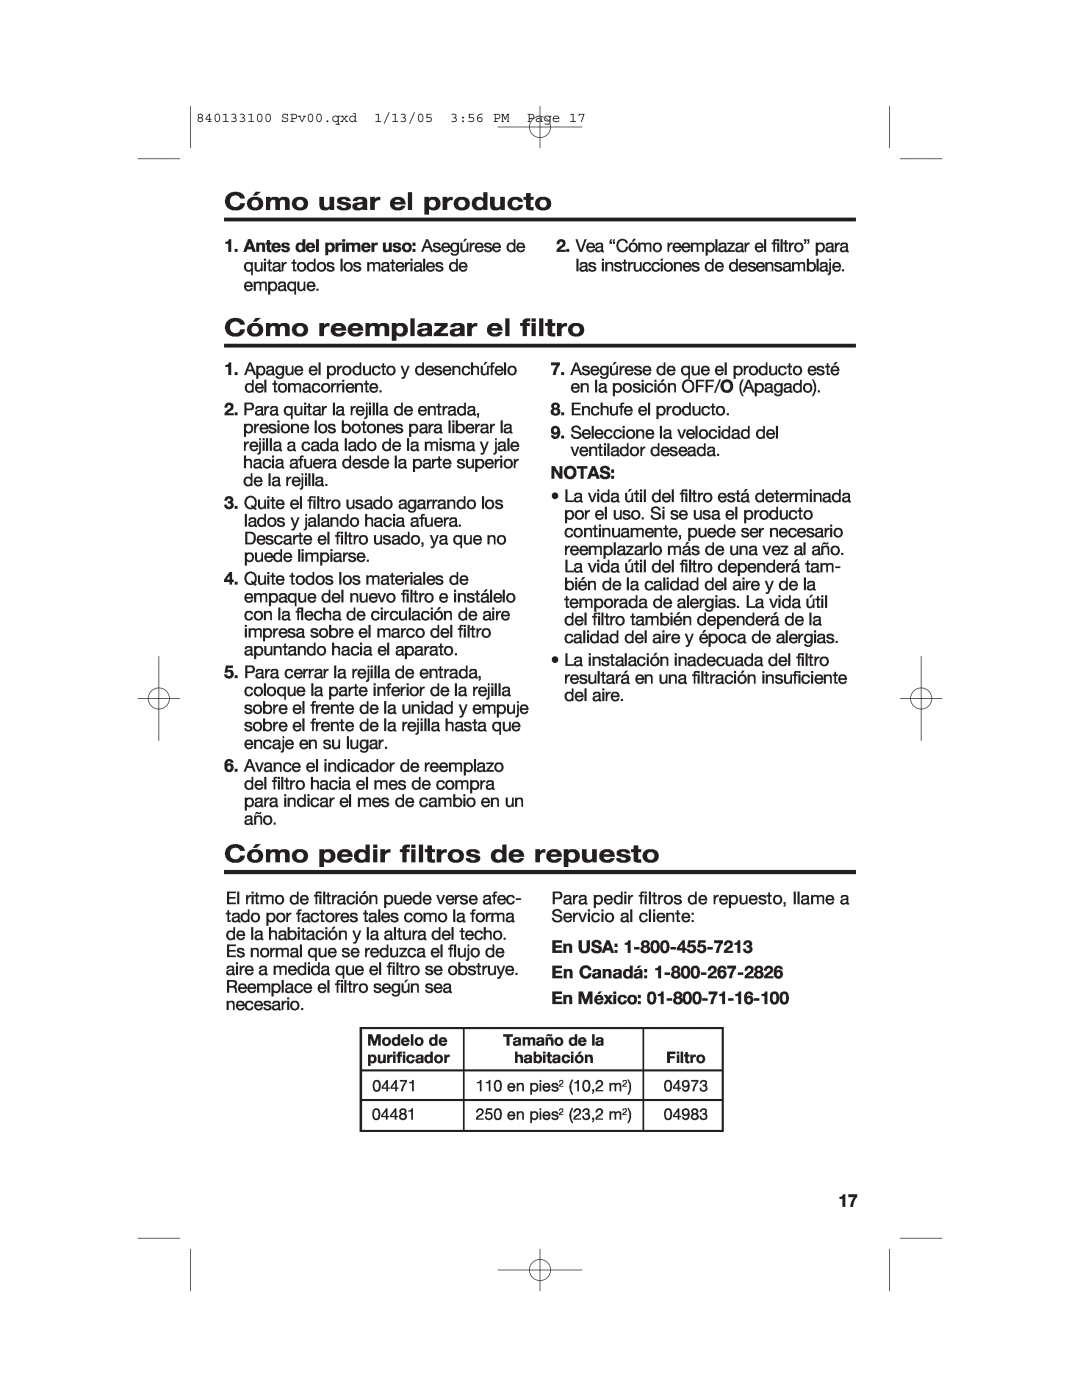 Hamilton Beach HEPA manual Cómo usar el producto, Cómo reemplazar el filtro, Cómo pedir filtros de repuesto, Notas 